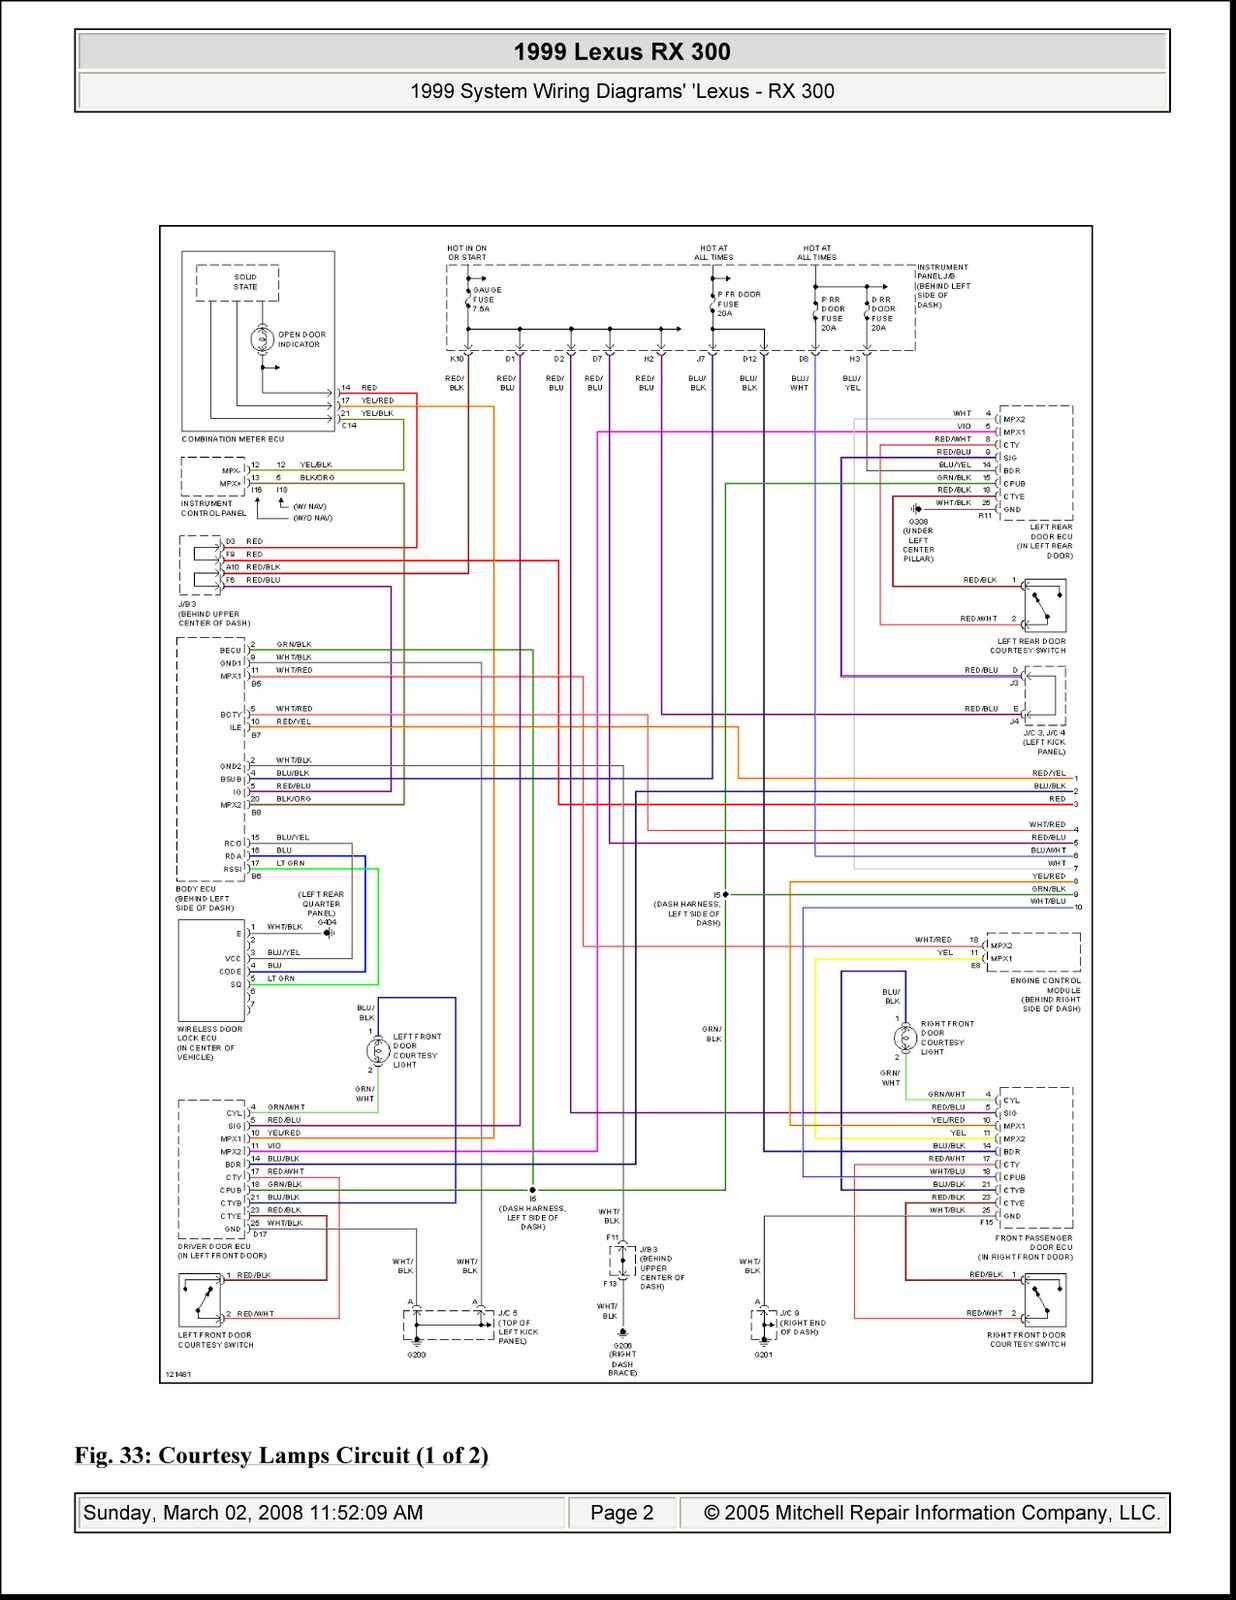 2000 Lexus Gs300 Radio Wiring Diagram from schematron.org